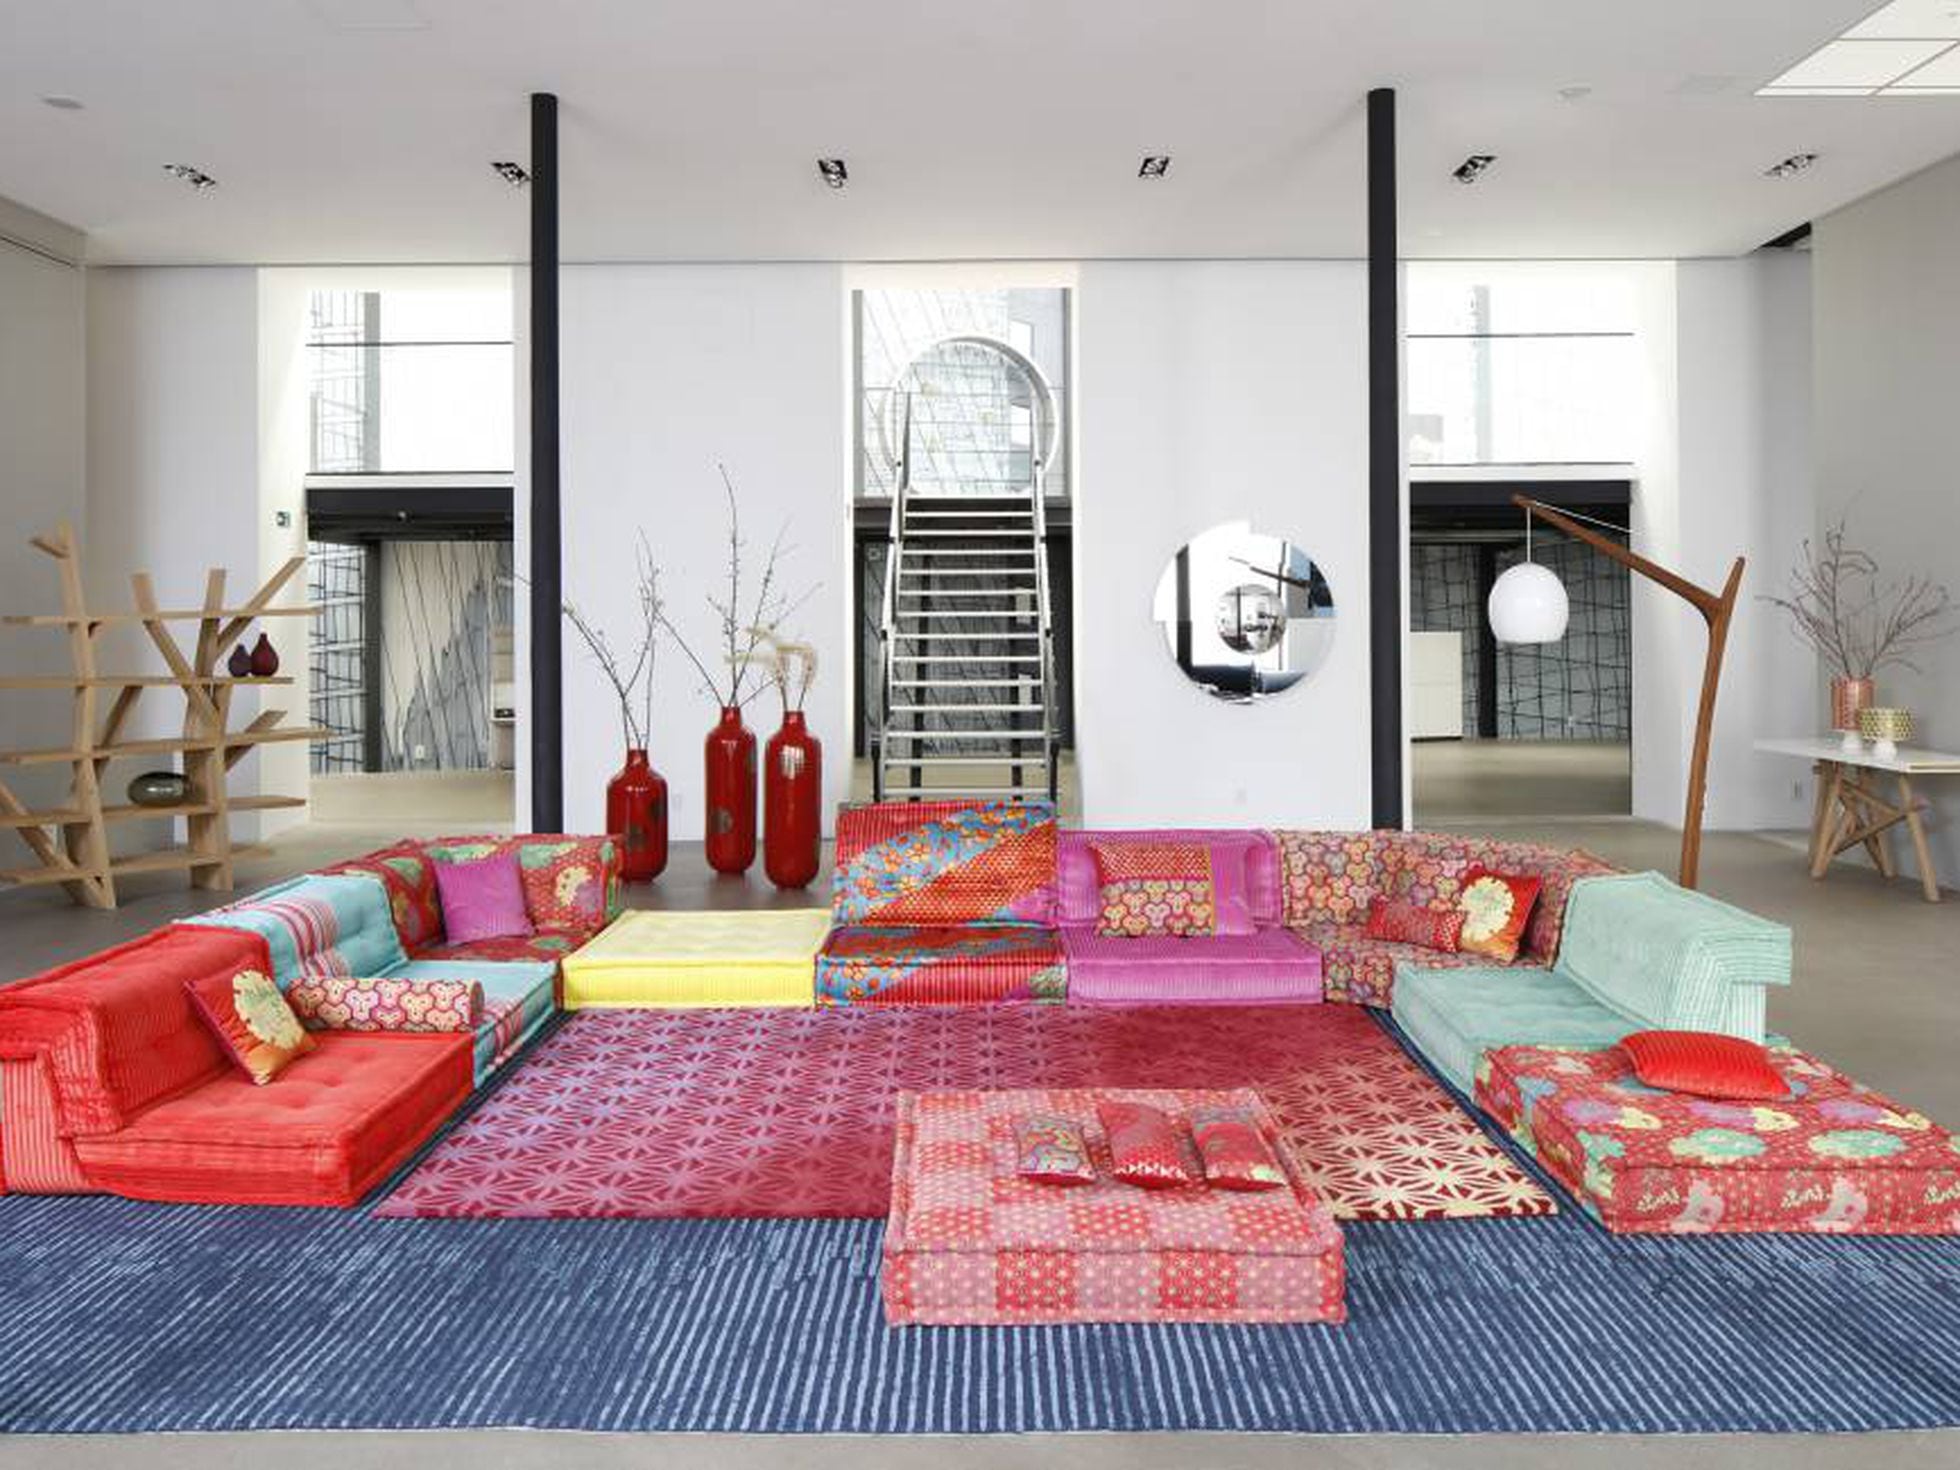 Viviendo a ras de suelo: este sofá se anticipó 'chill out' | ICON Design | EL PAÍS